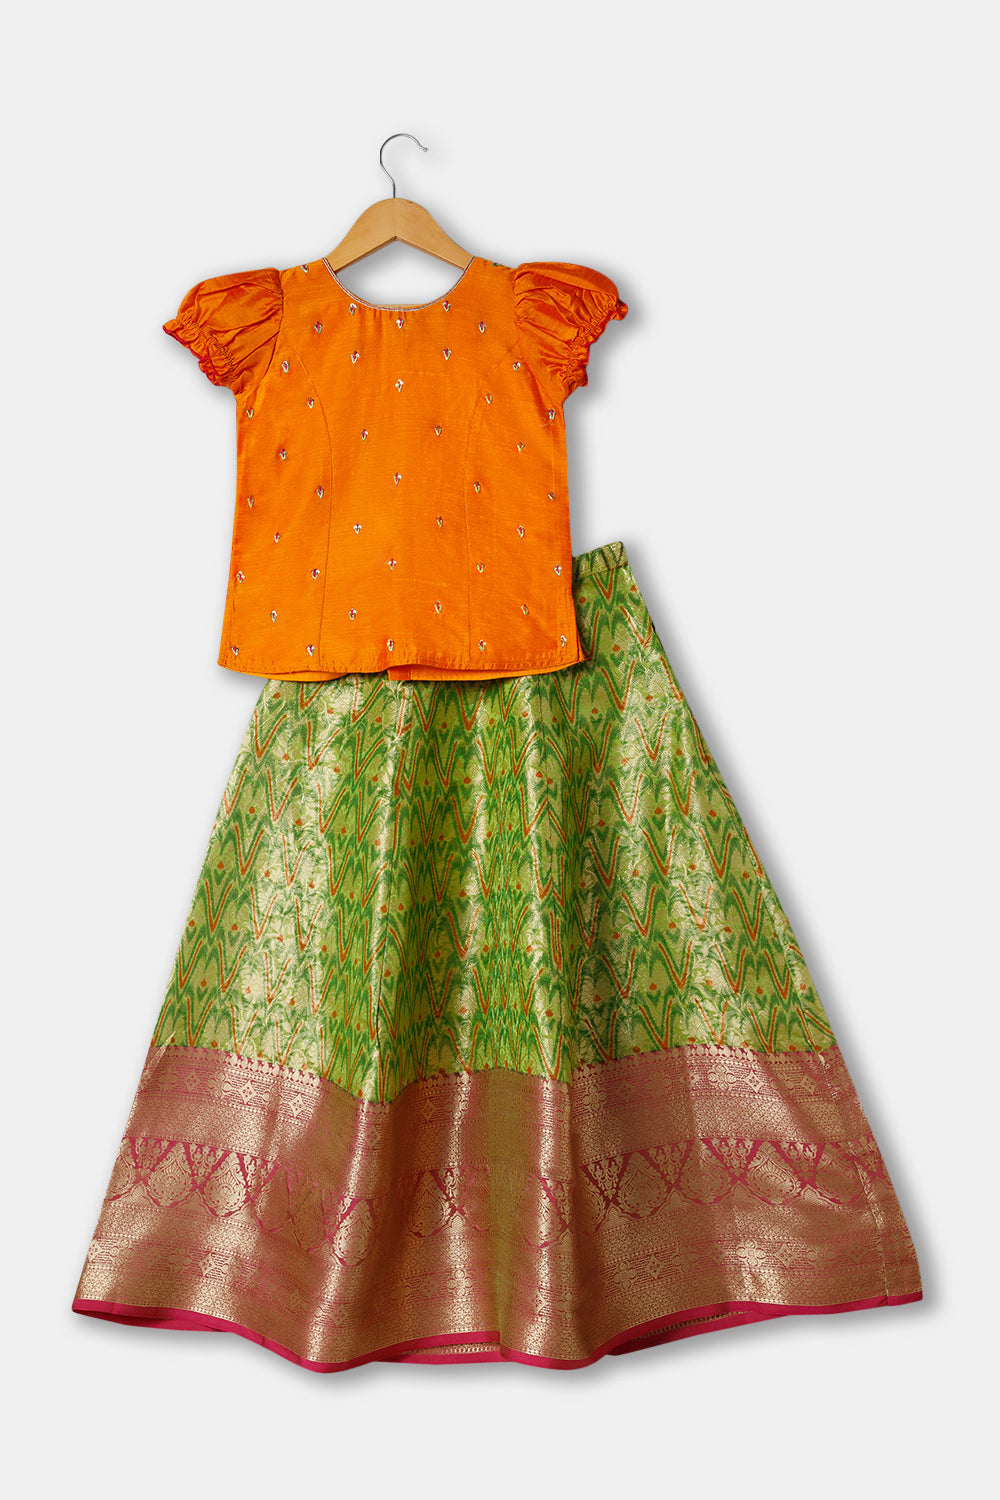 Chittythalli Girls Ethnic wear  Cotton blend  Pavadai Set with  Round Neck Puff Sleeve - Orange - PS36